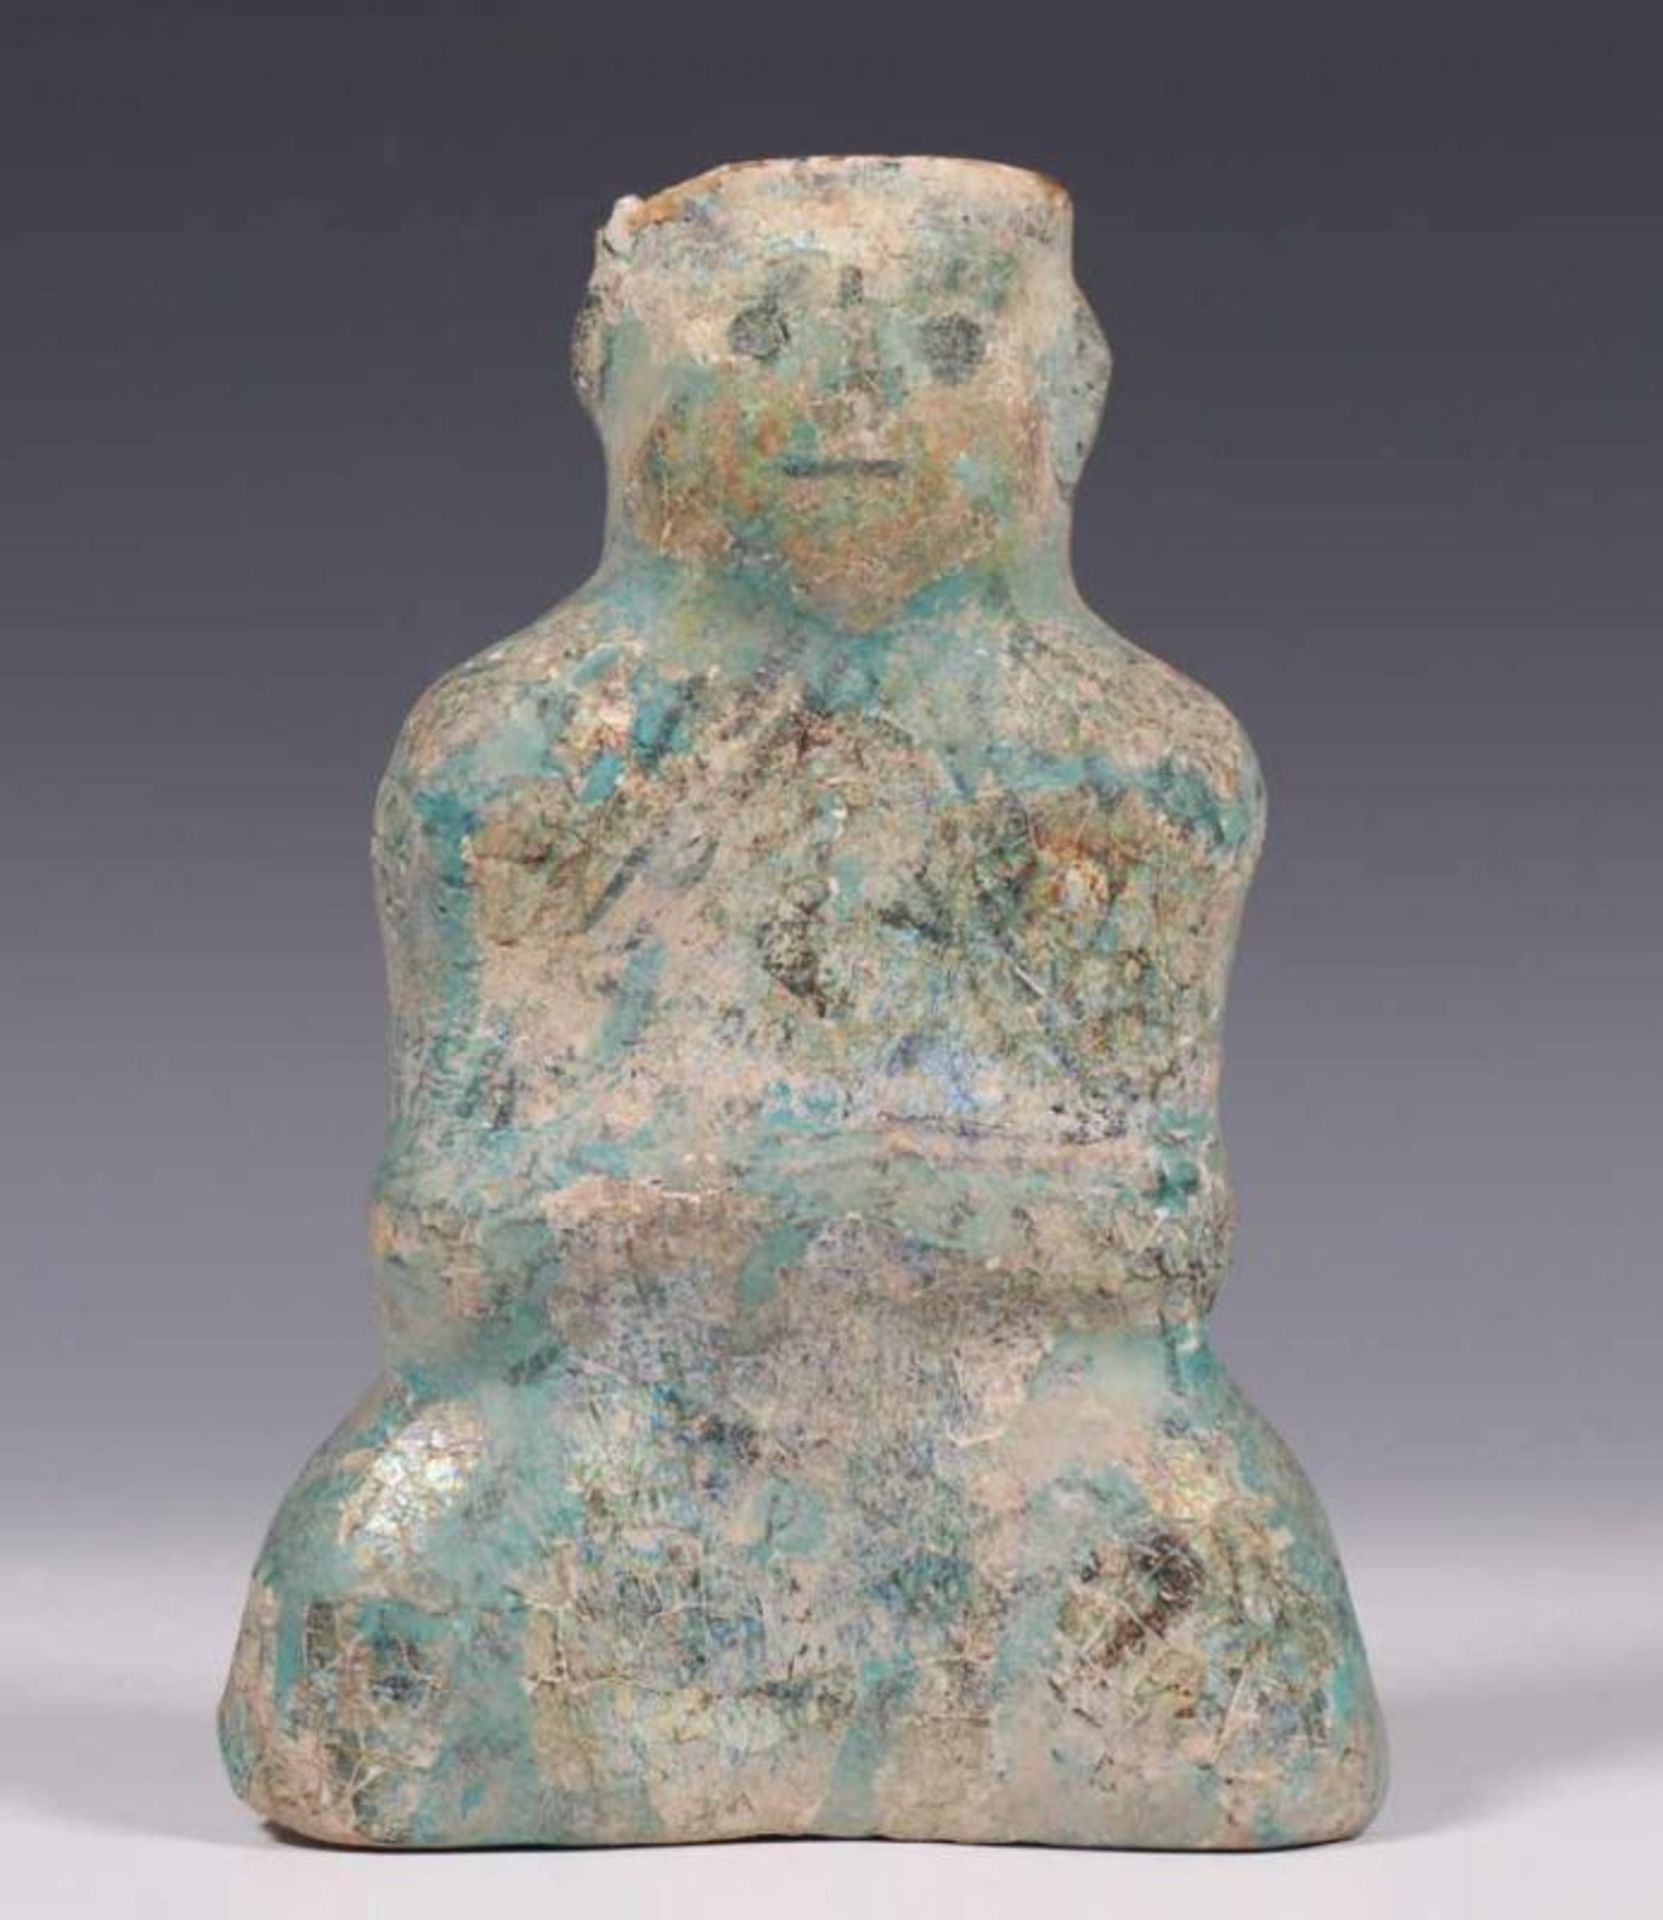 Perzië, fritware flacon, mogelijk 13e eeuw,met turkoois glazuur, in vorm van zittend figuur, met